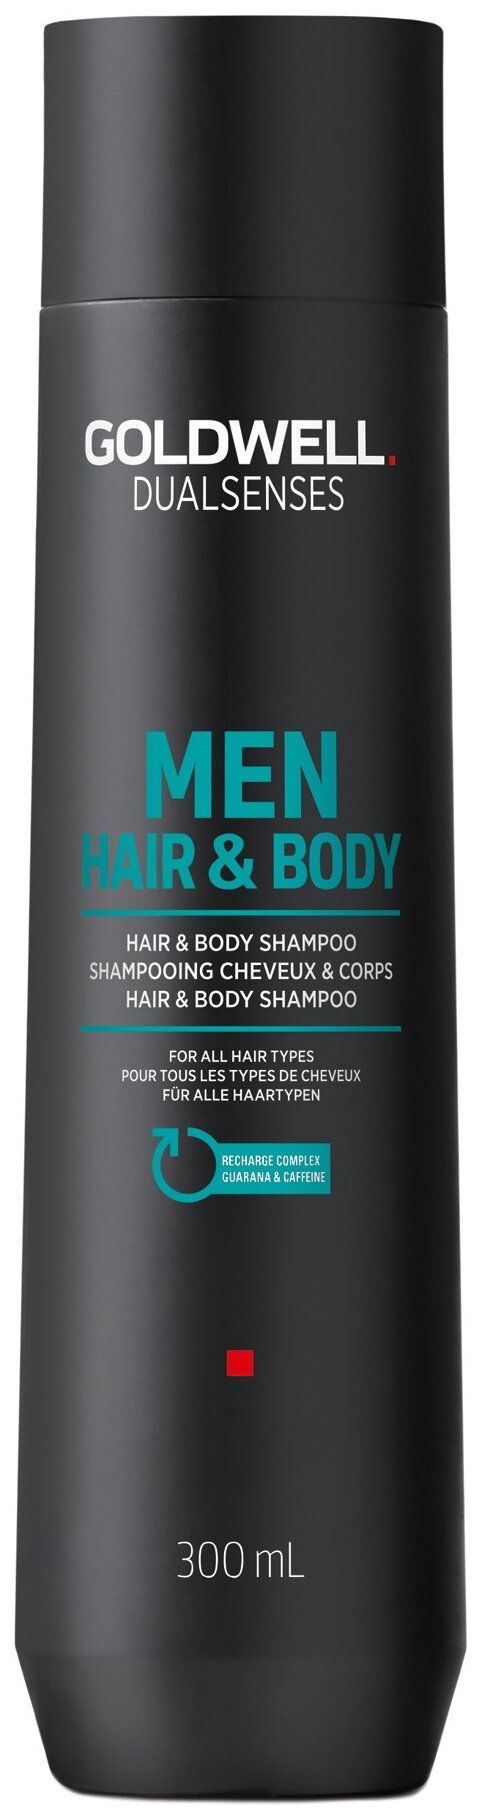 Гель-шампунь Goldwell DualSenses Men hair&body, 300 мл